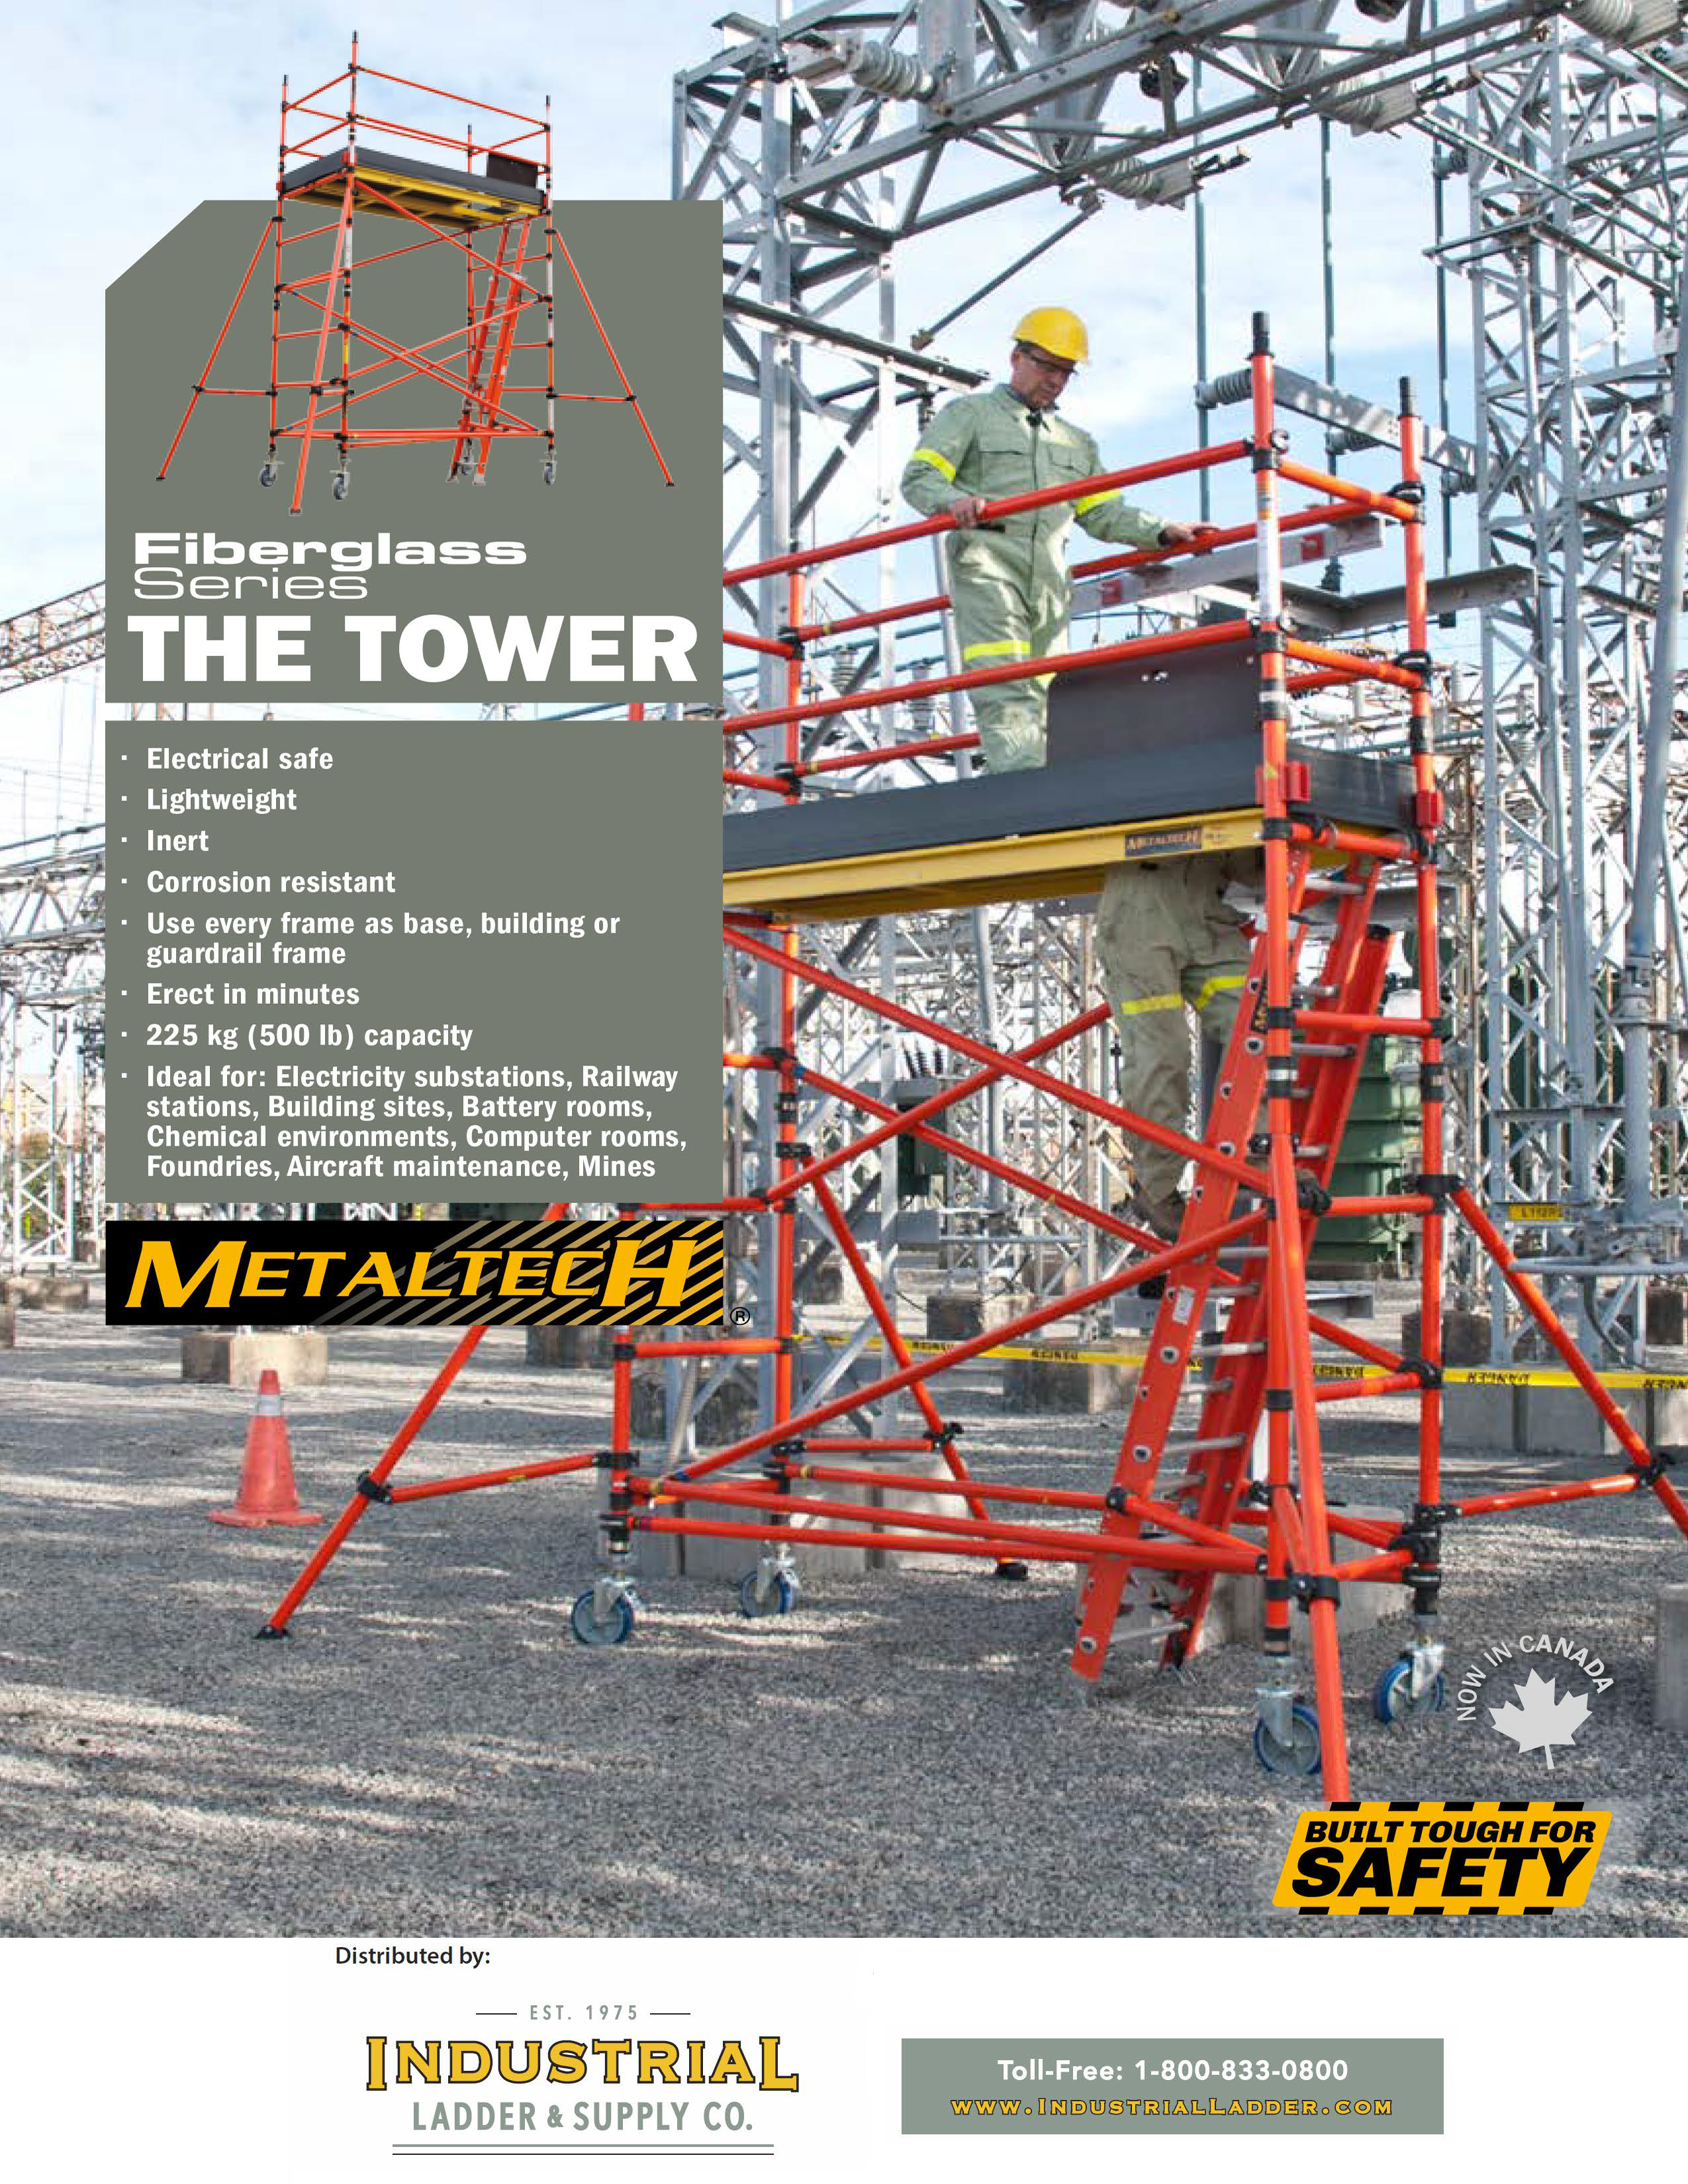 metaltech-fiberglass-tower-1.jpg